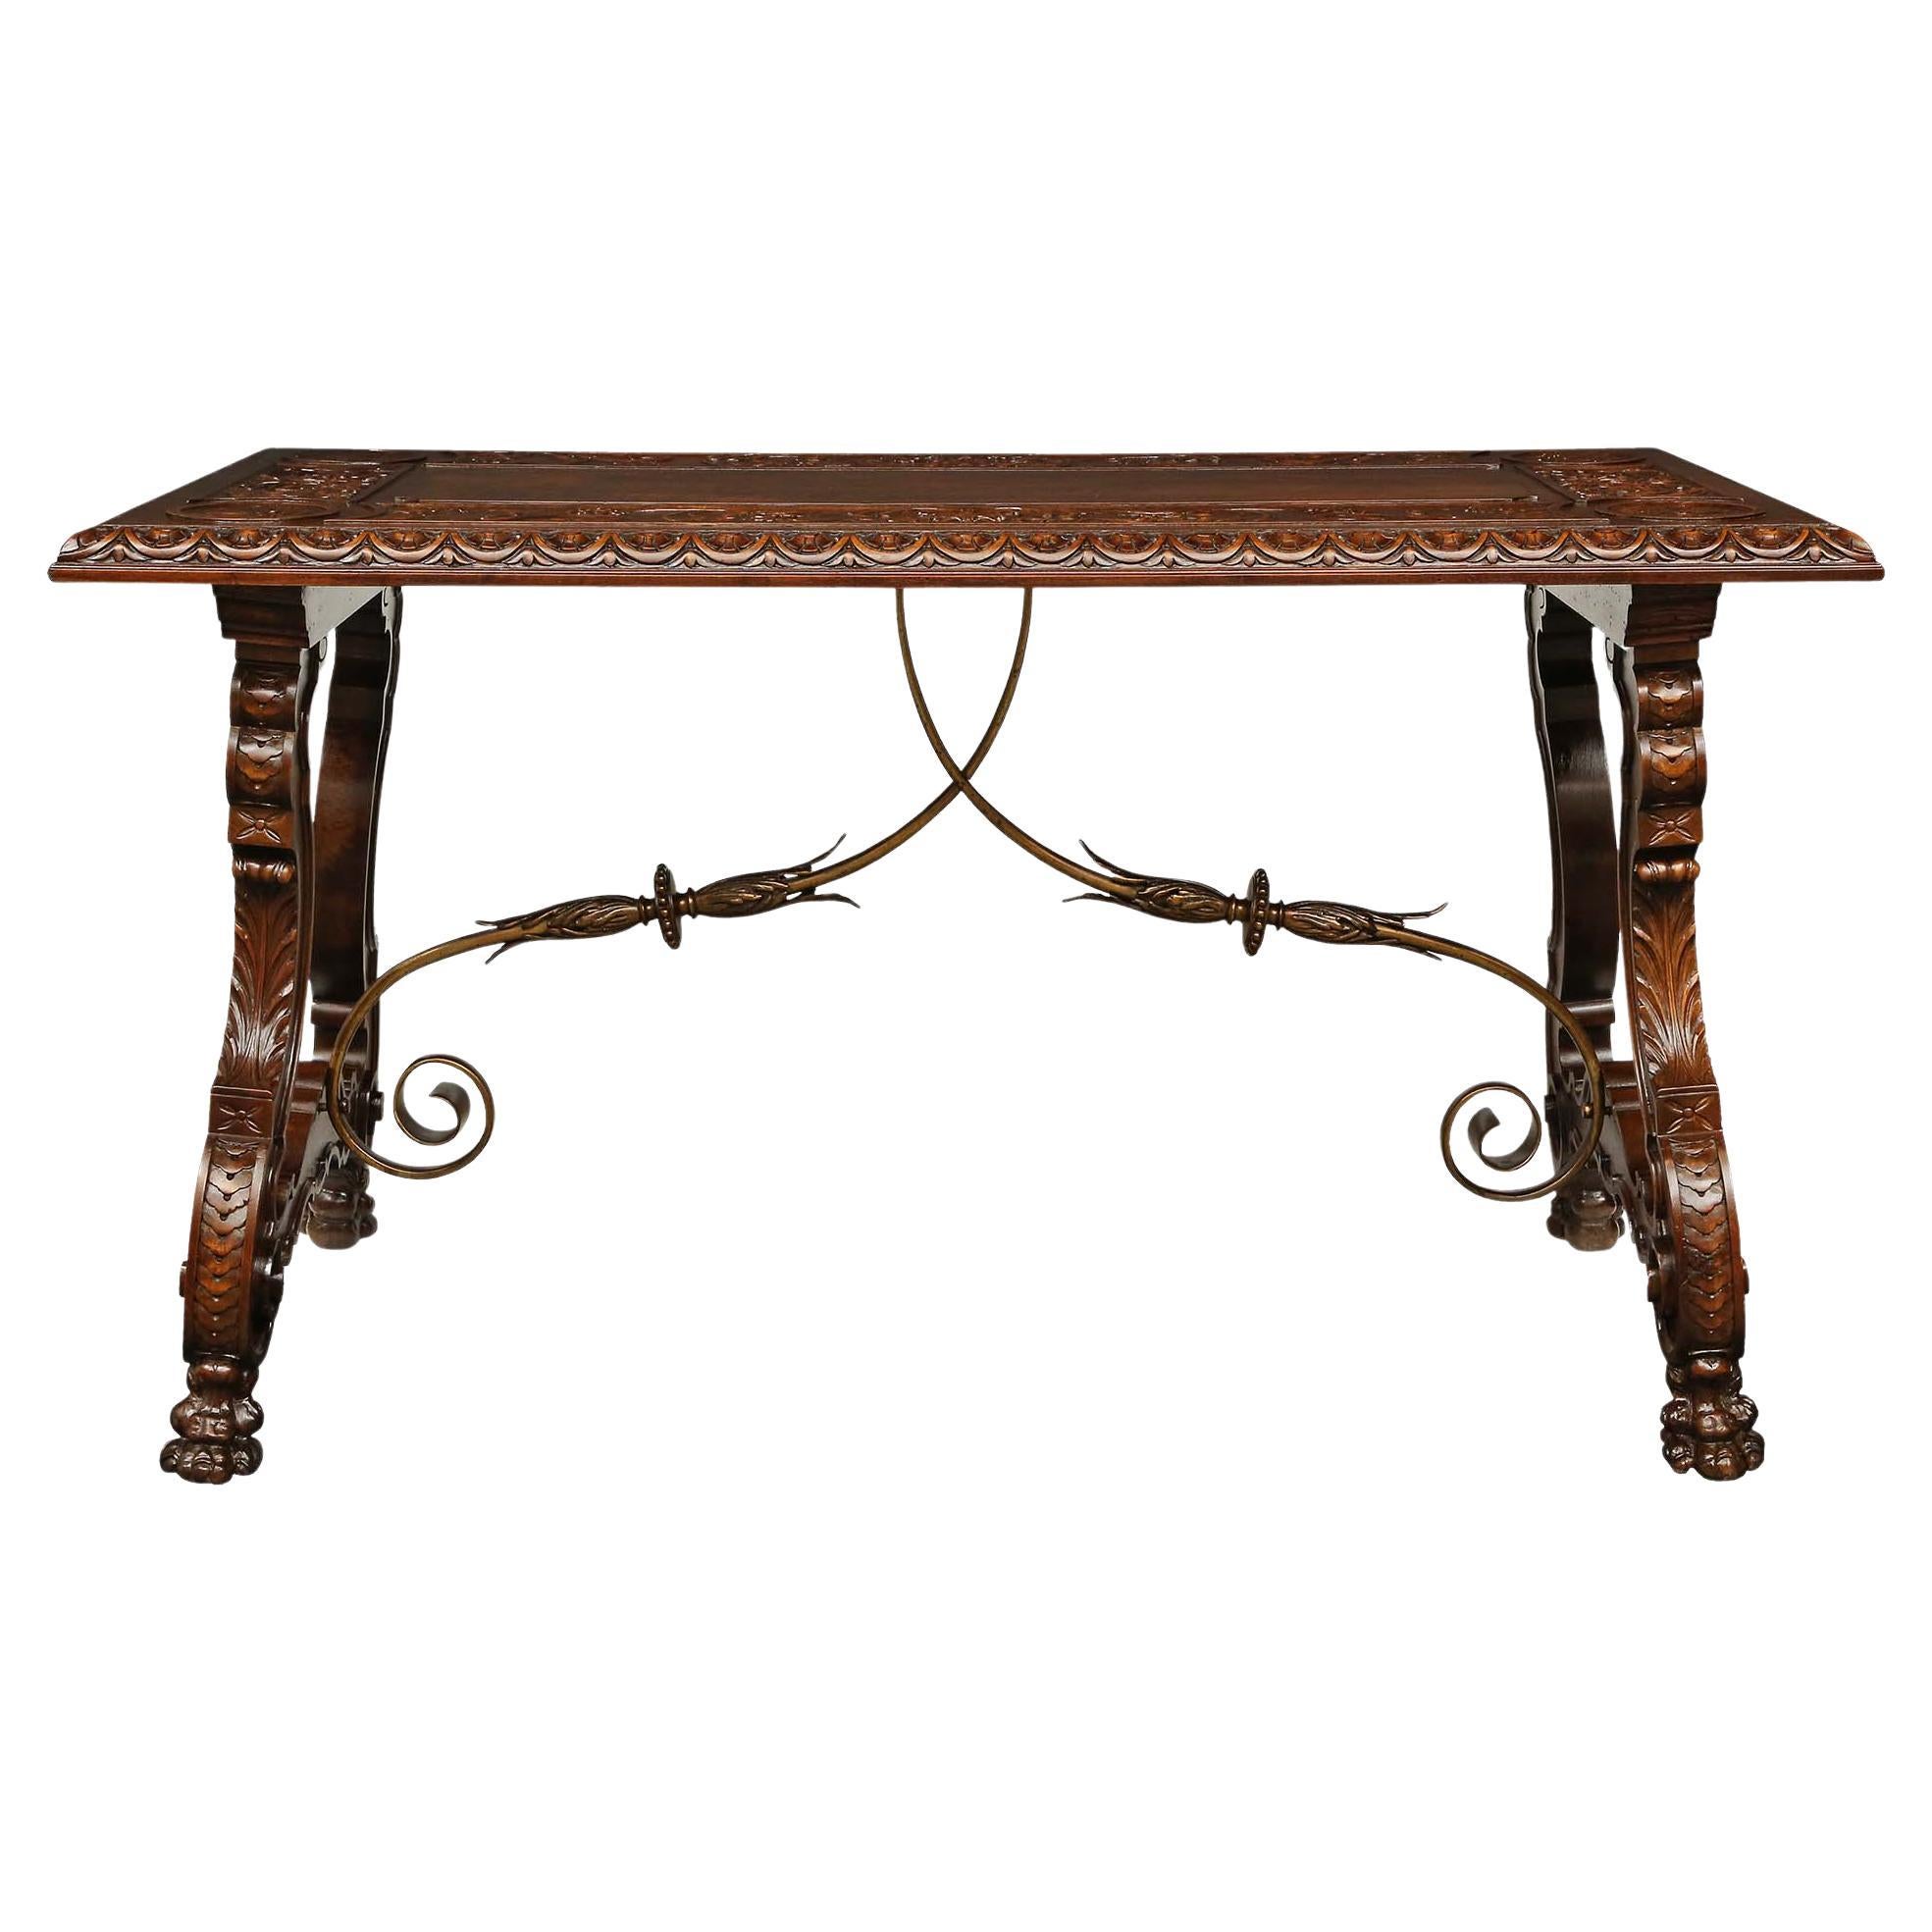 Spanish 19th Century Renaissance Style Walnut Trestle Table